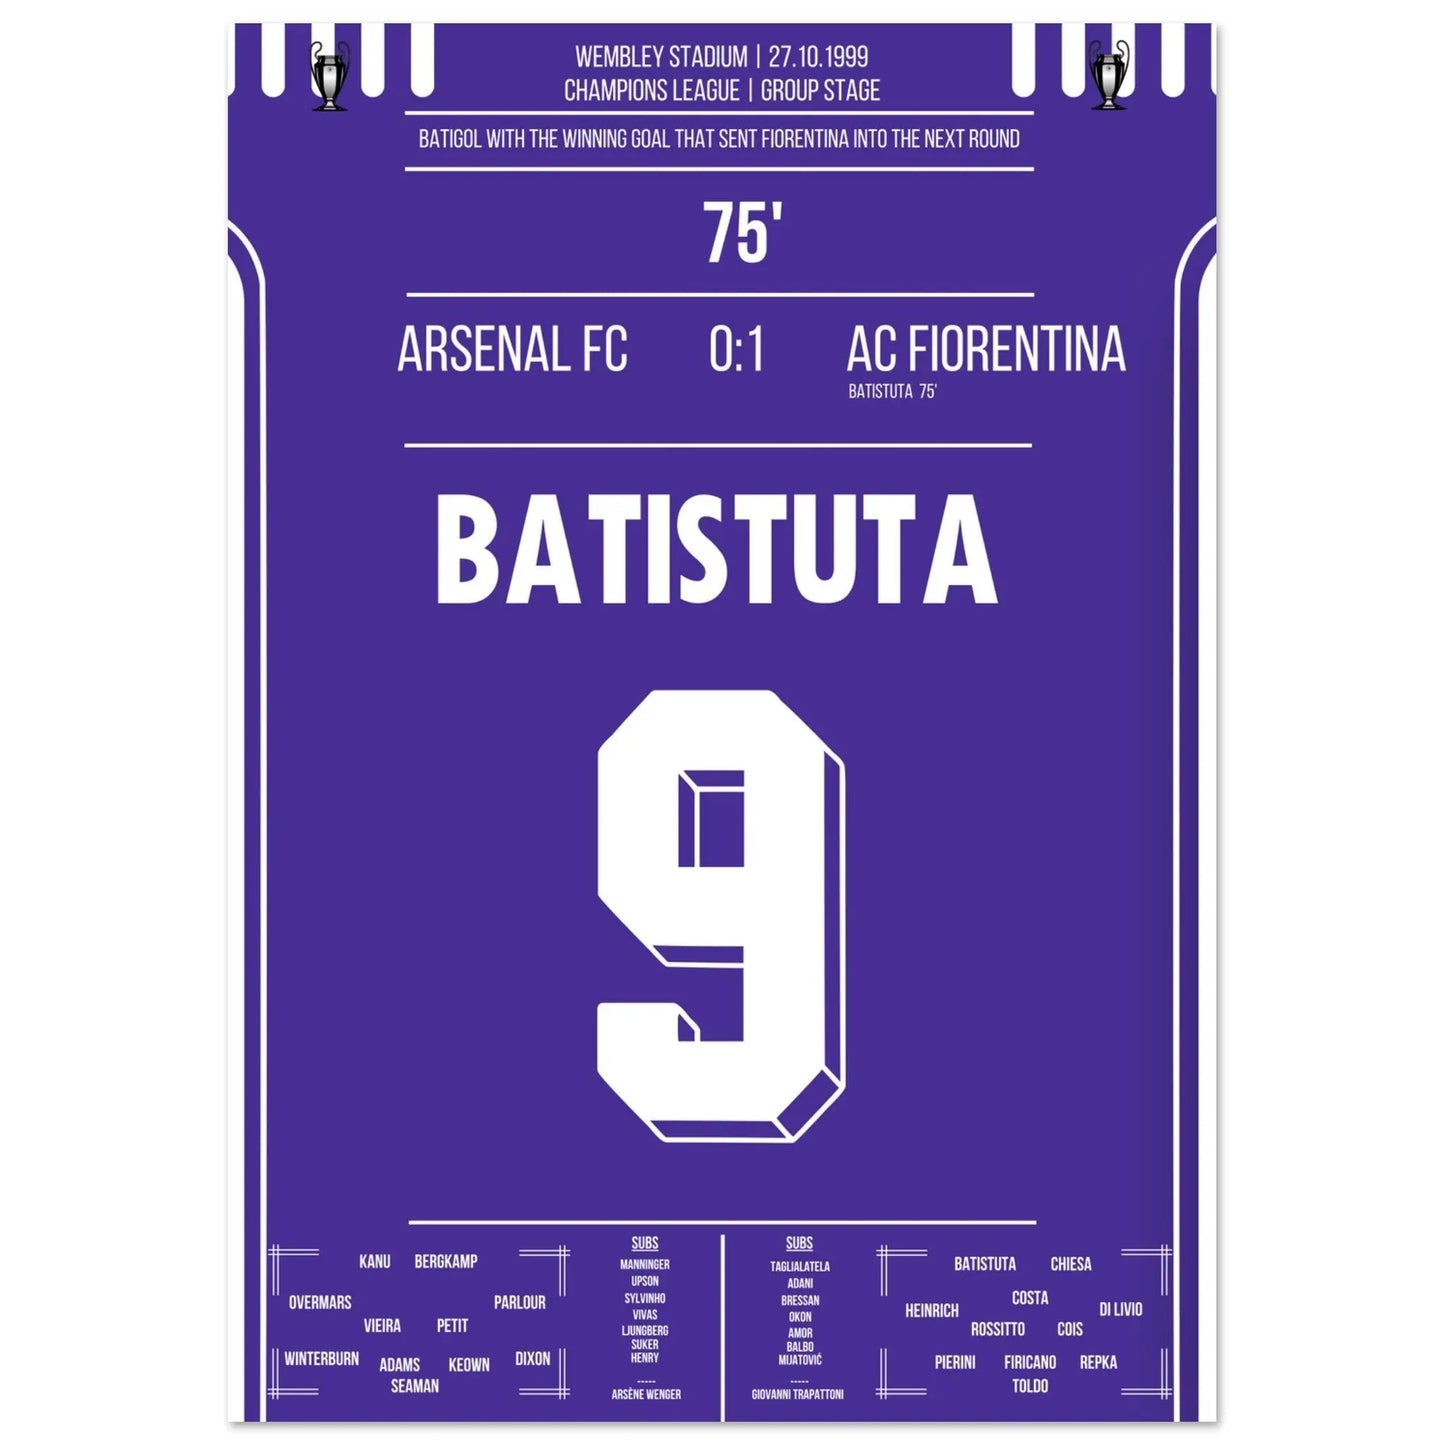 Batistuta propulse la Fiorentina au prochain tour de la Ligue des Champions 1999/00